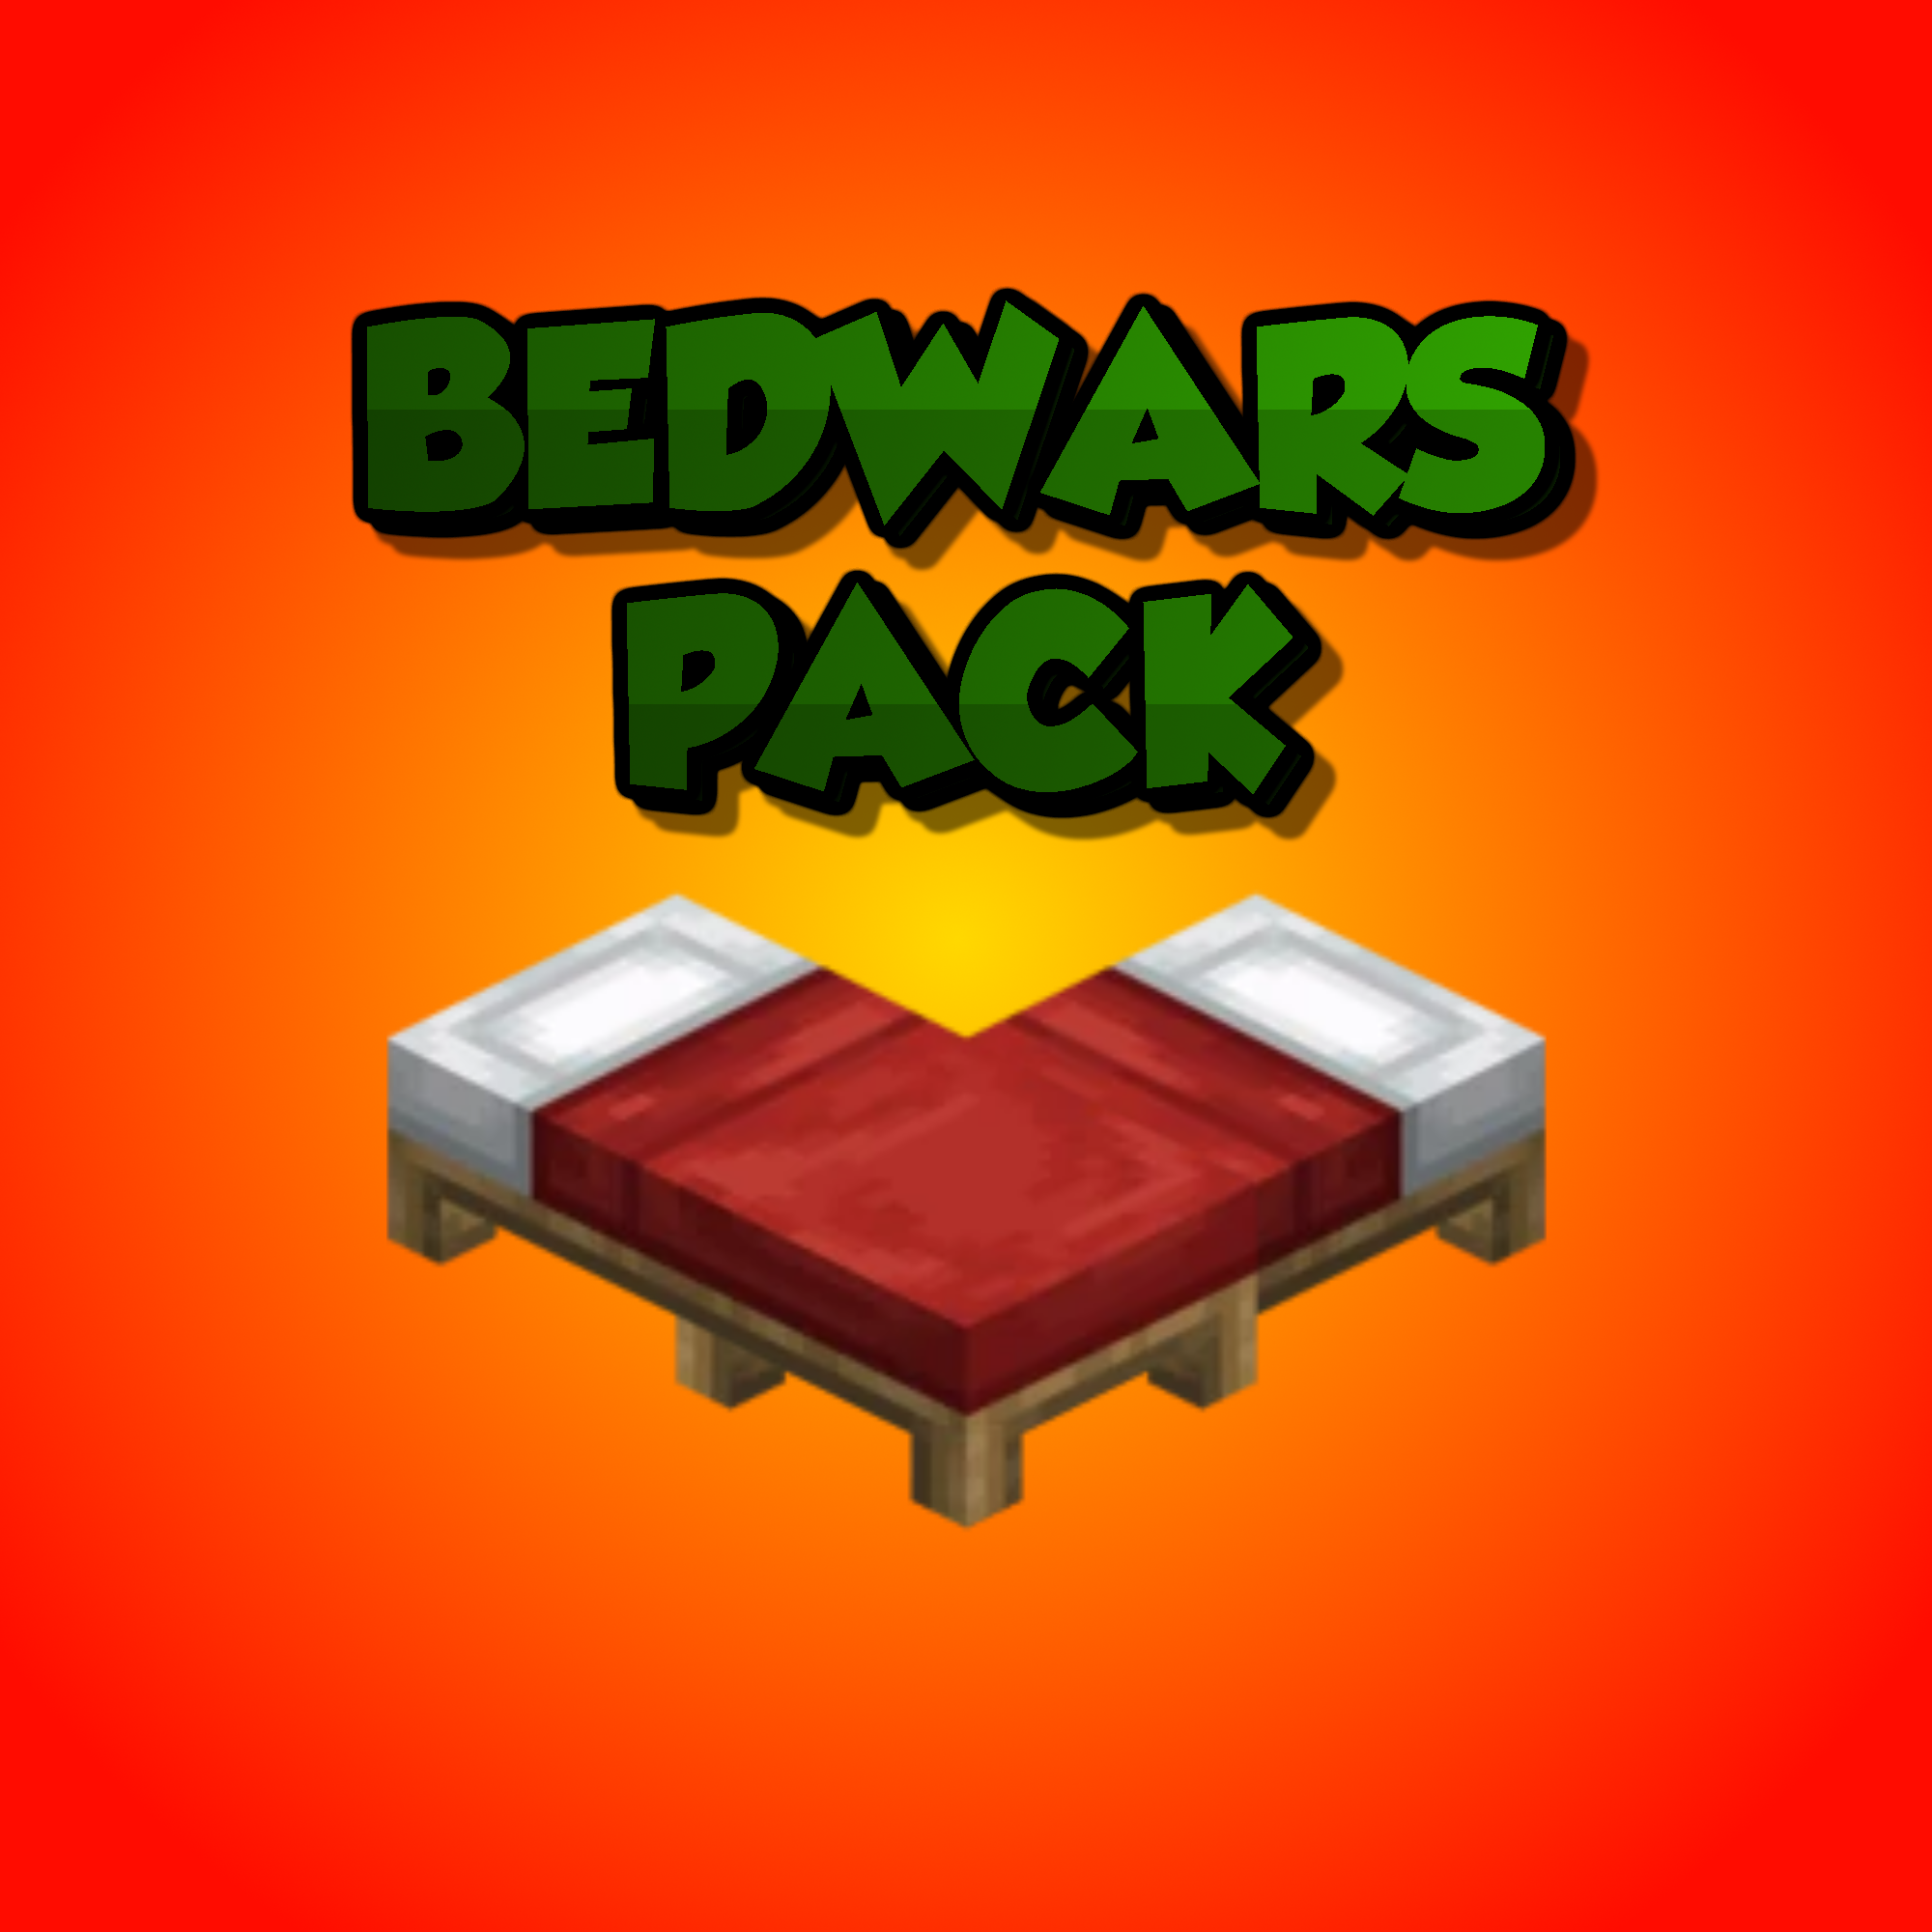 Bedwars Pack